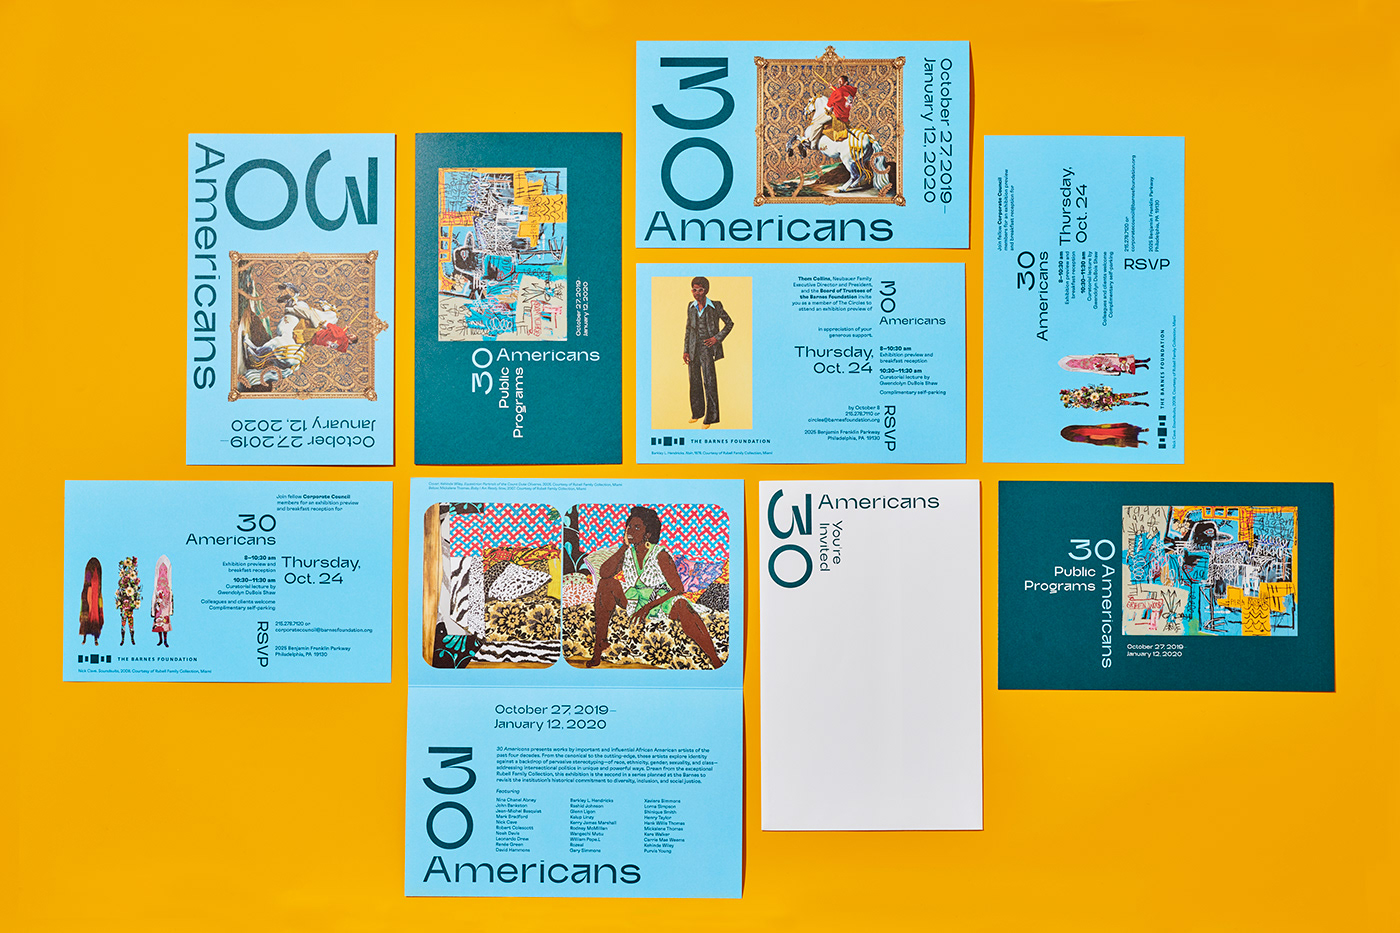 30 Americans art book exhibit Invitation museum bruta.types Grilli Type publication spread design